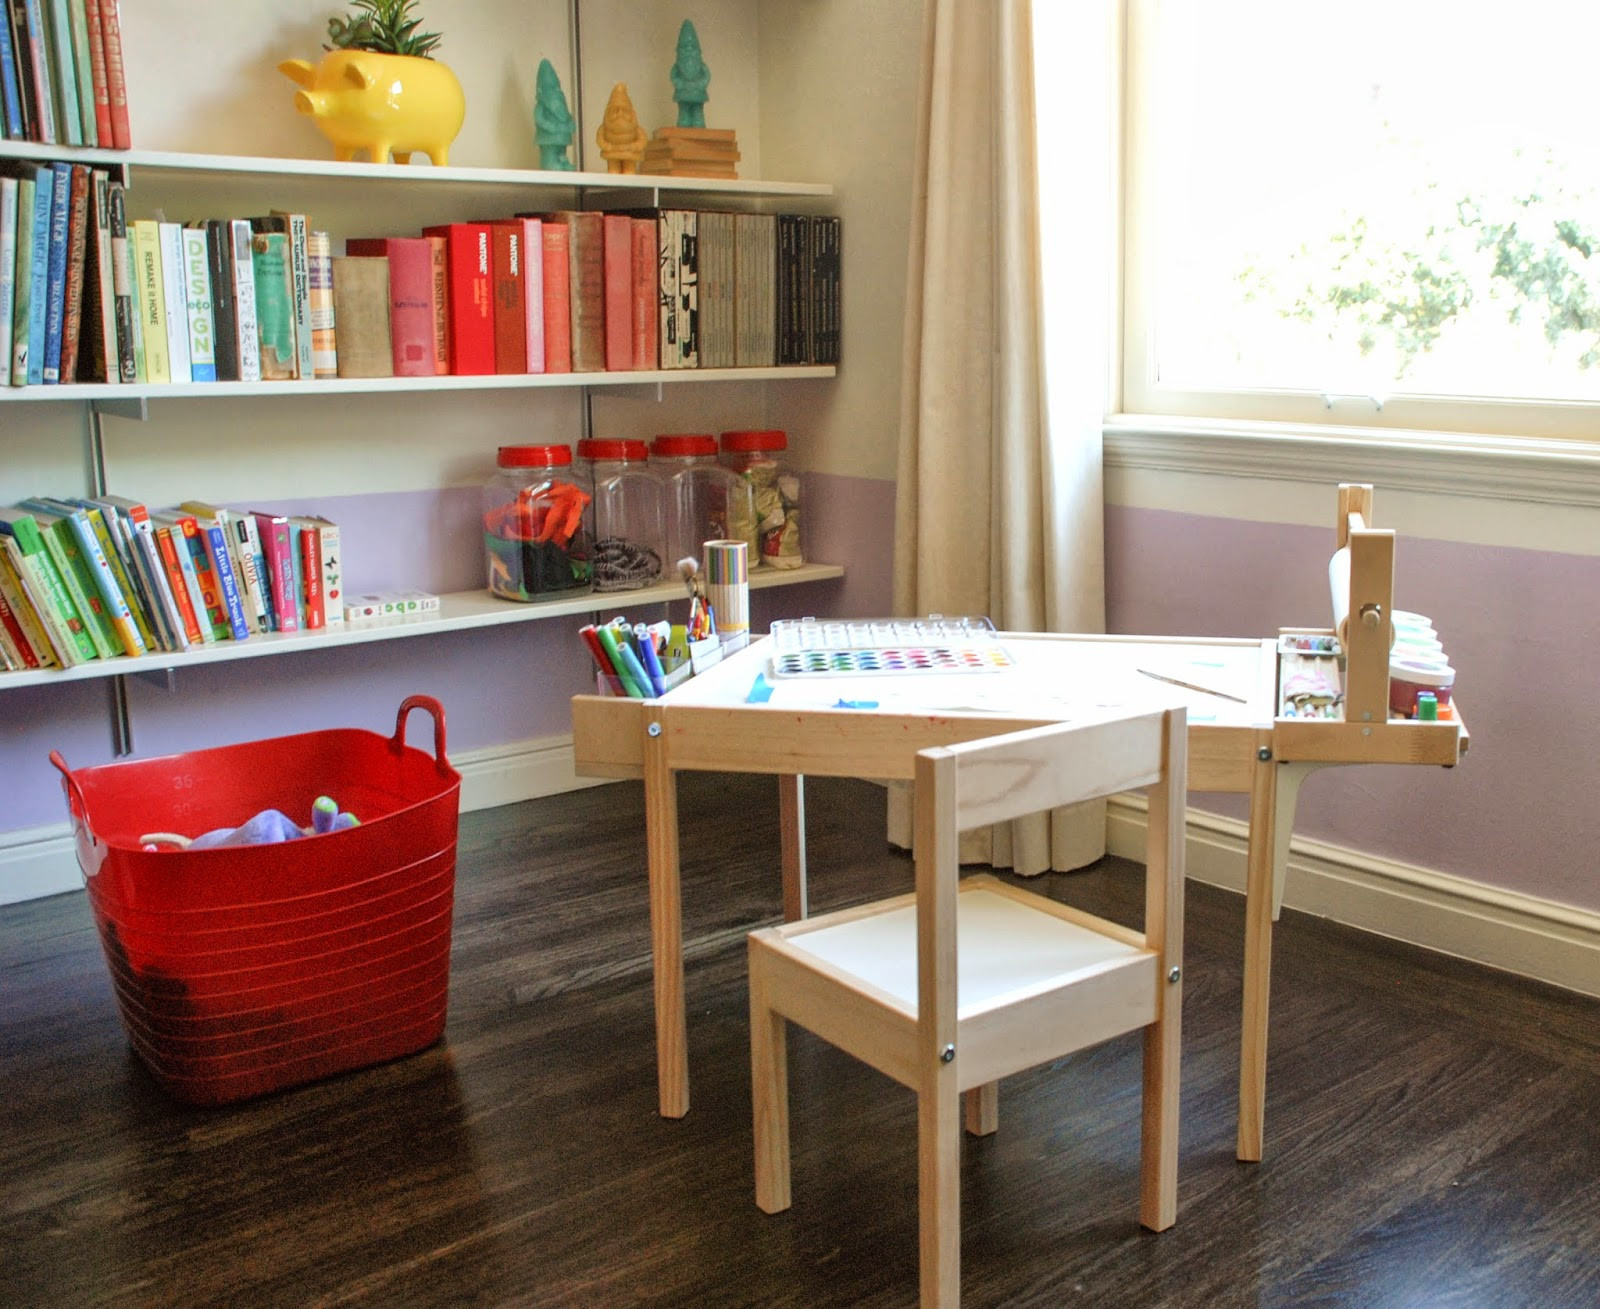 Craft Desk For Kids
 Design Ingenuity DIY Kids Craft Table